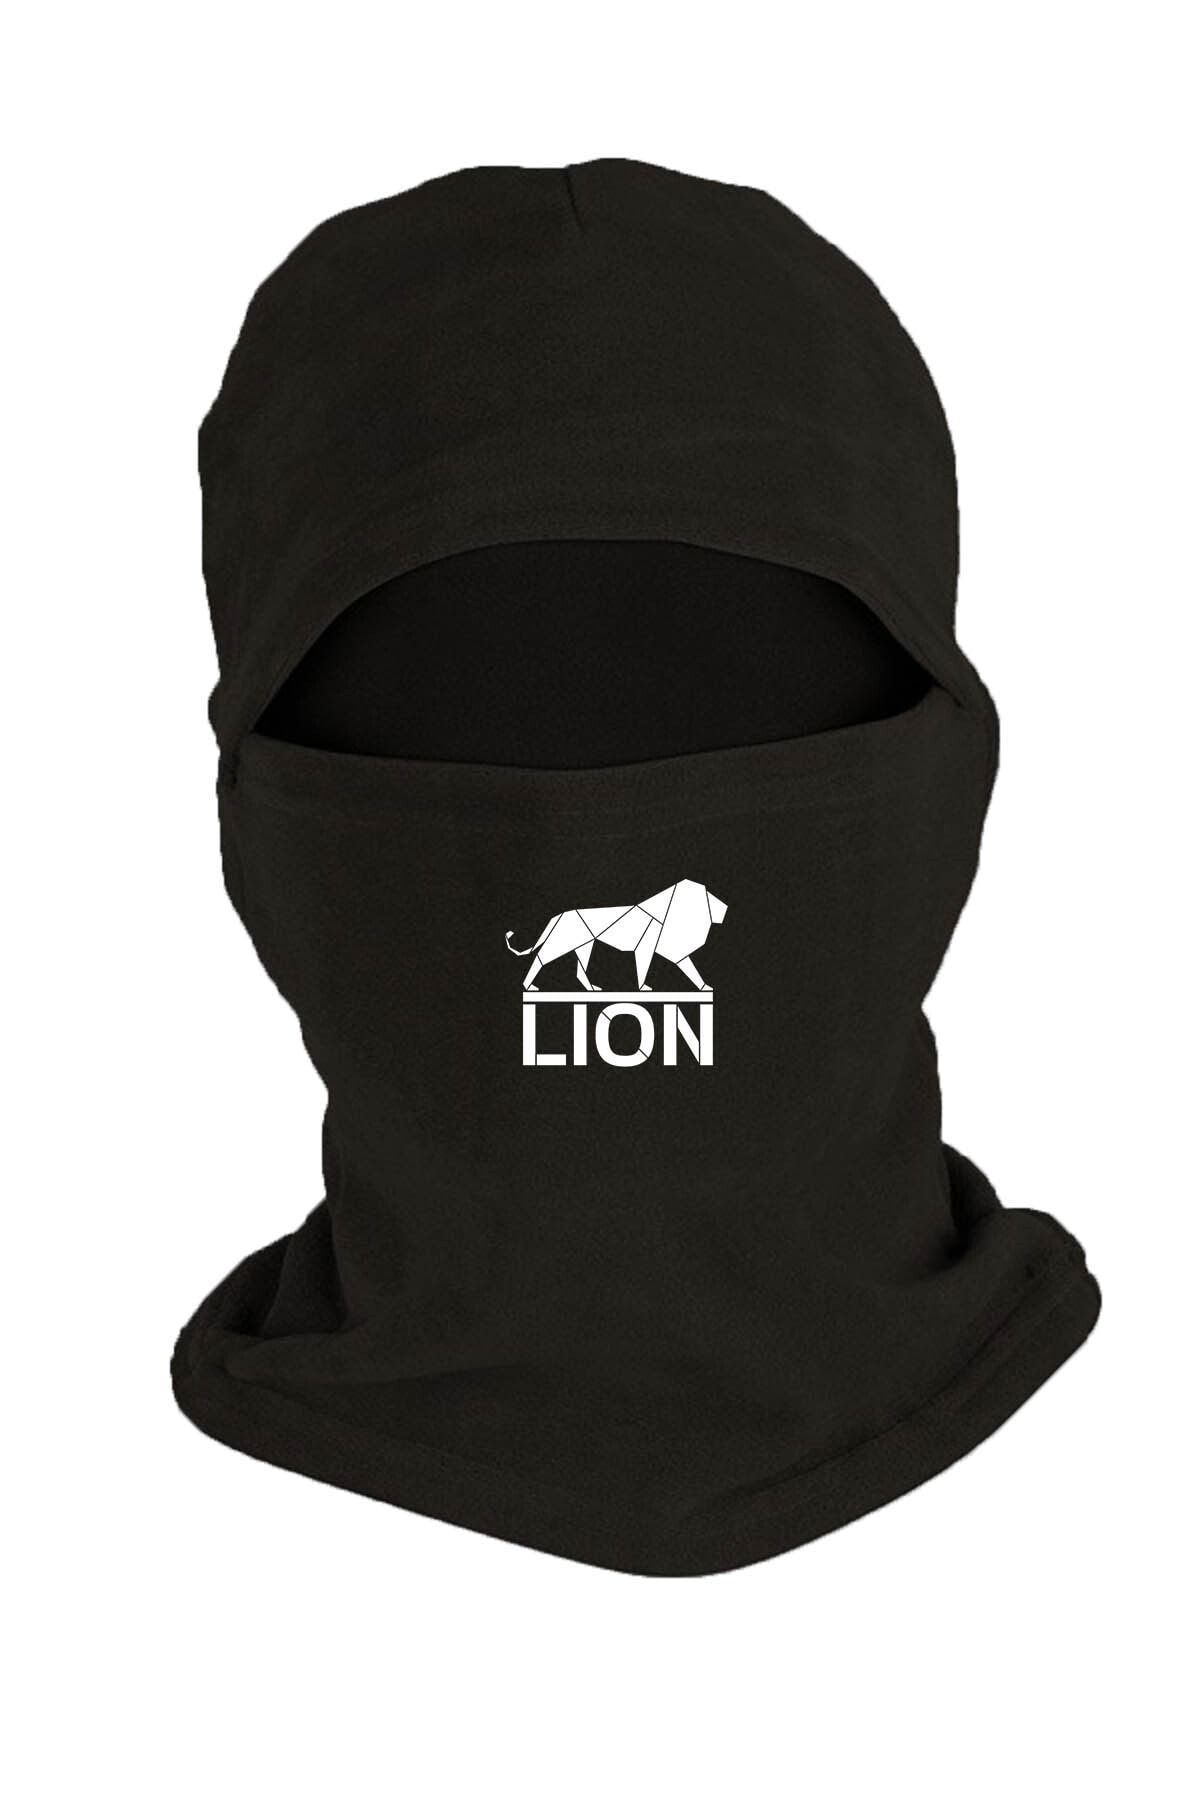 Zeron Tasarım Lion Baskılı Kışlık Polar Kar Maskesi Siyah Bll833